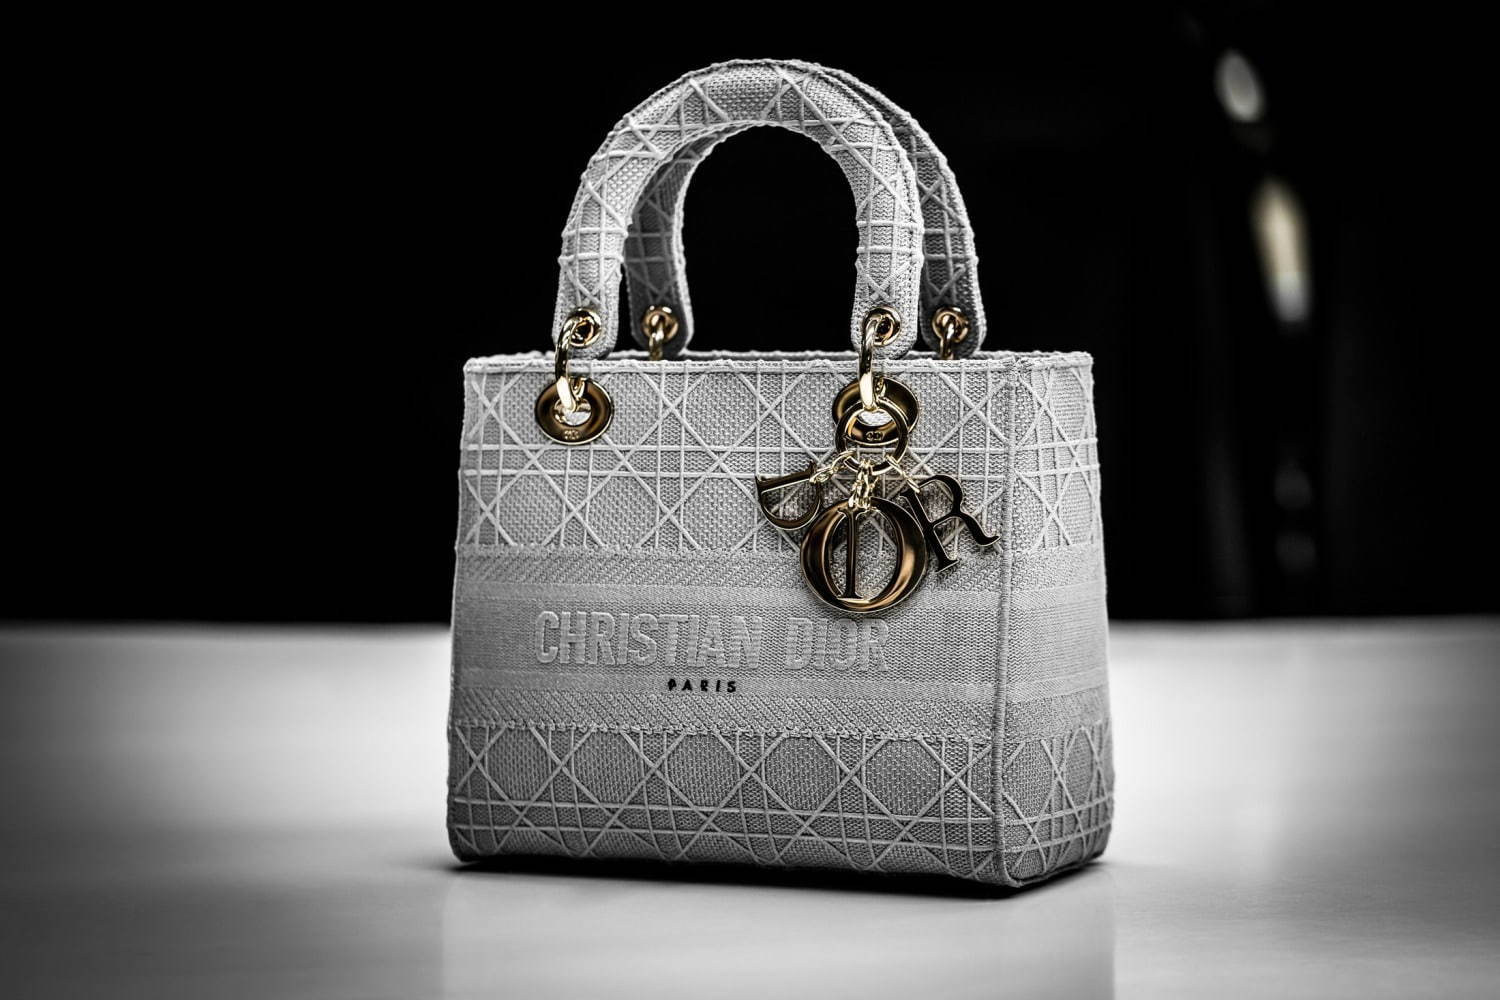 クリスチャンディオール Christian Dior バッグ ハンドバッグ ショルダーバッグ カナージュ柄 ロゴチャーム キャンバス カバン レディース ベージュ